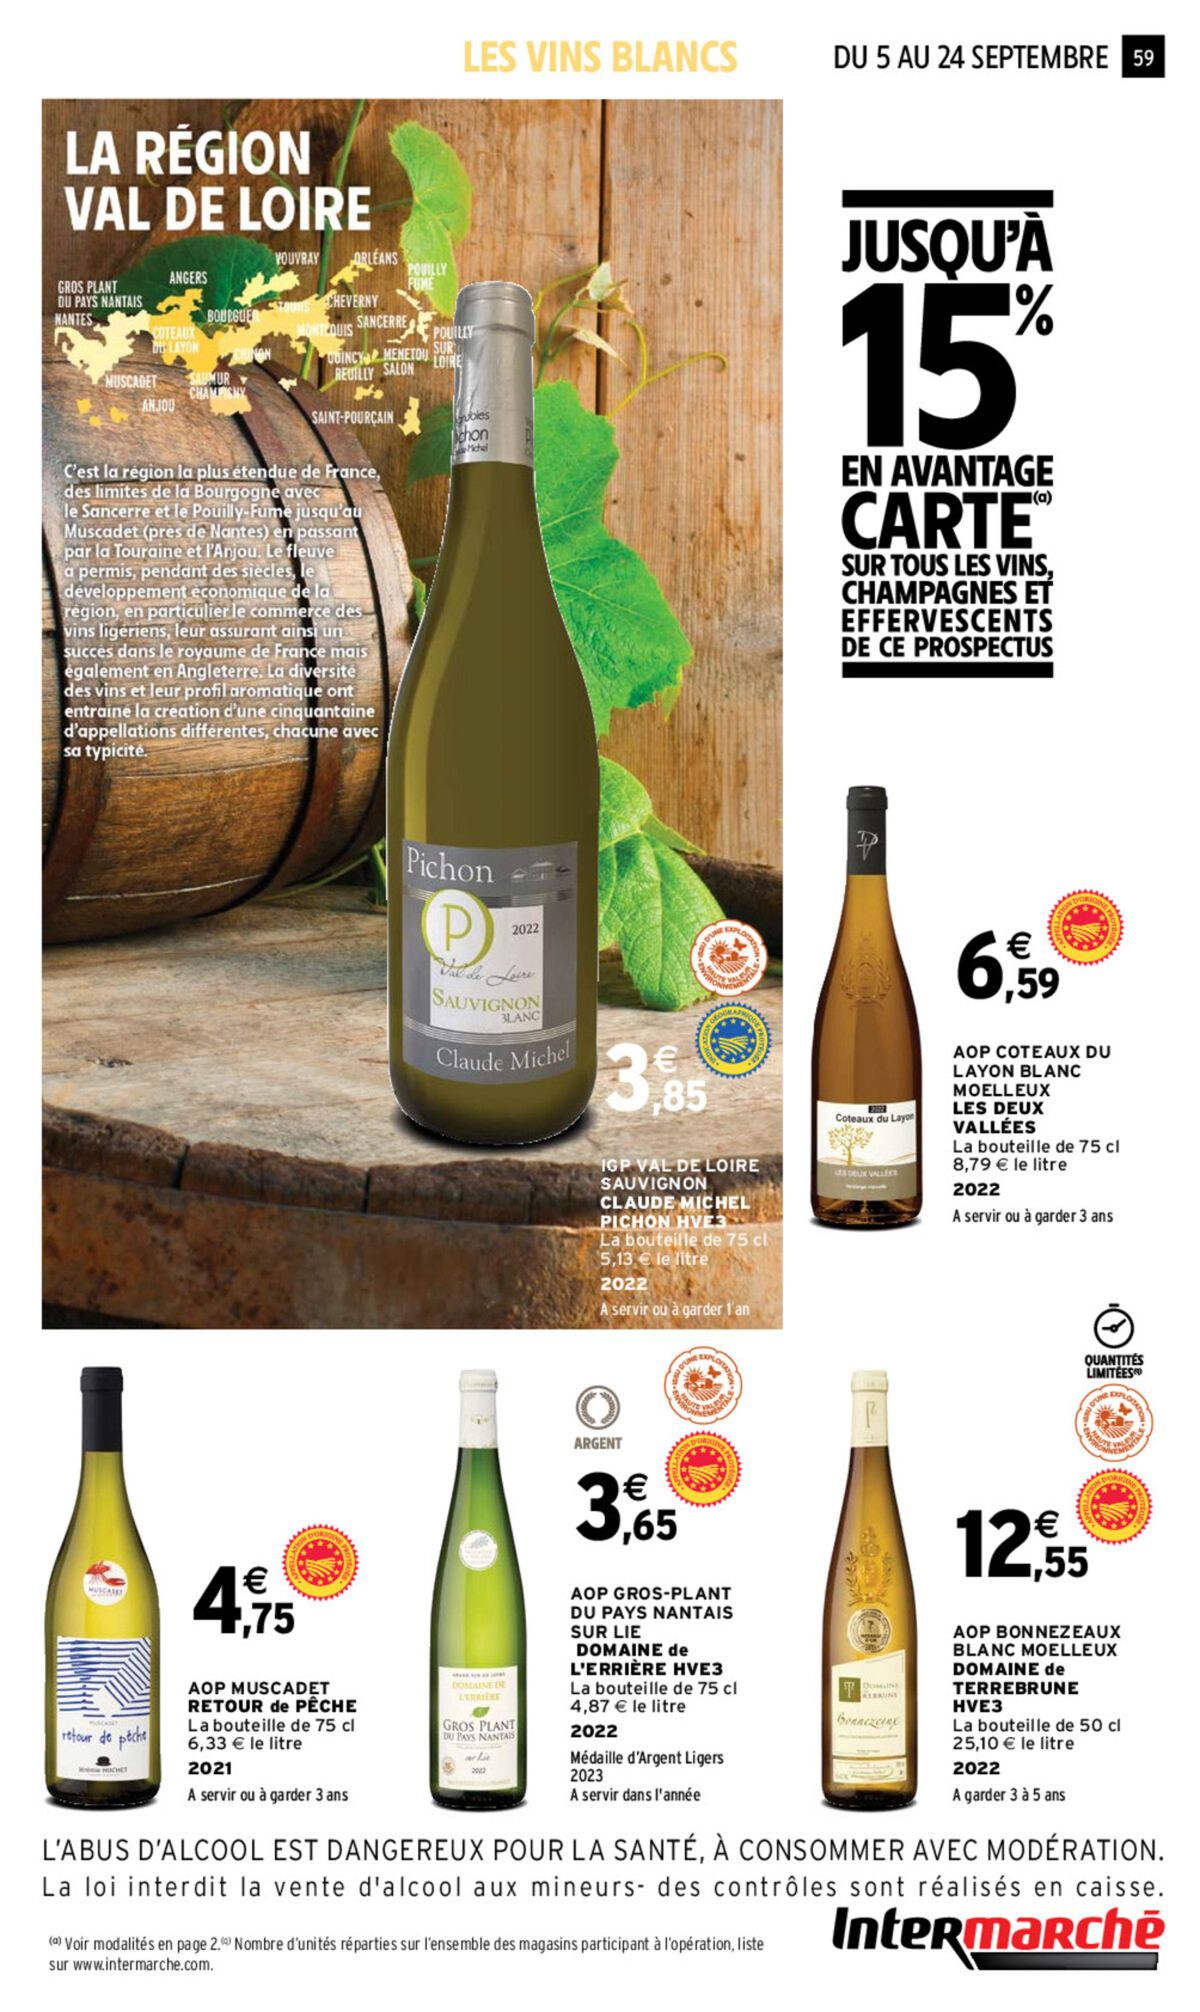 Catalogue Foire aux vins, page 00057